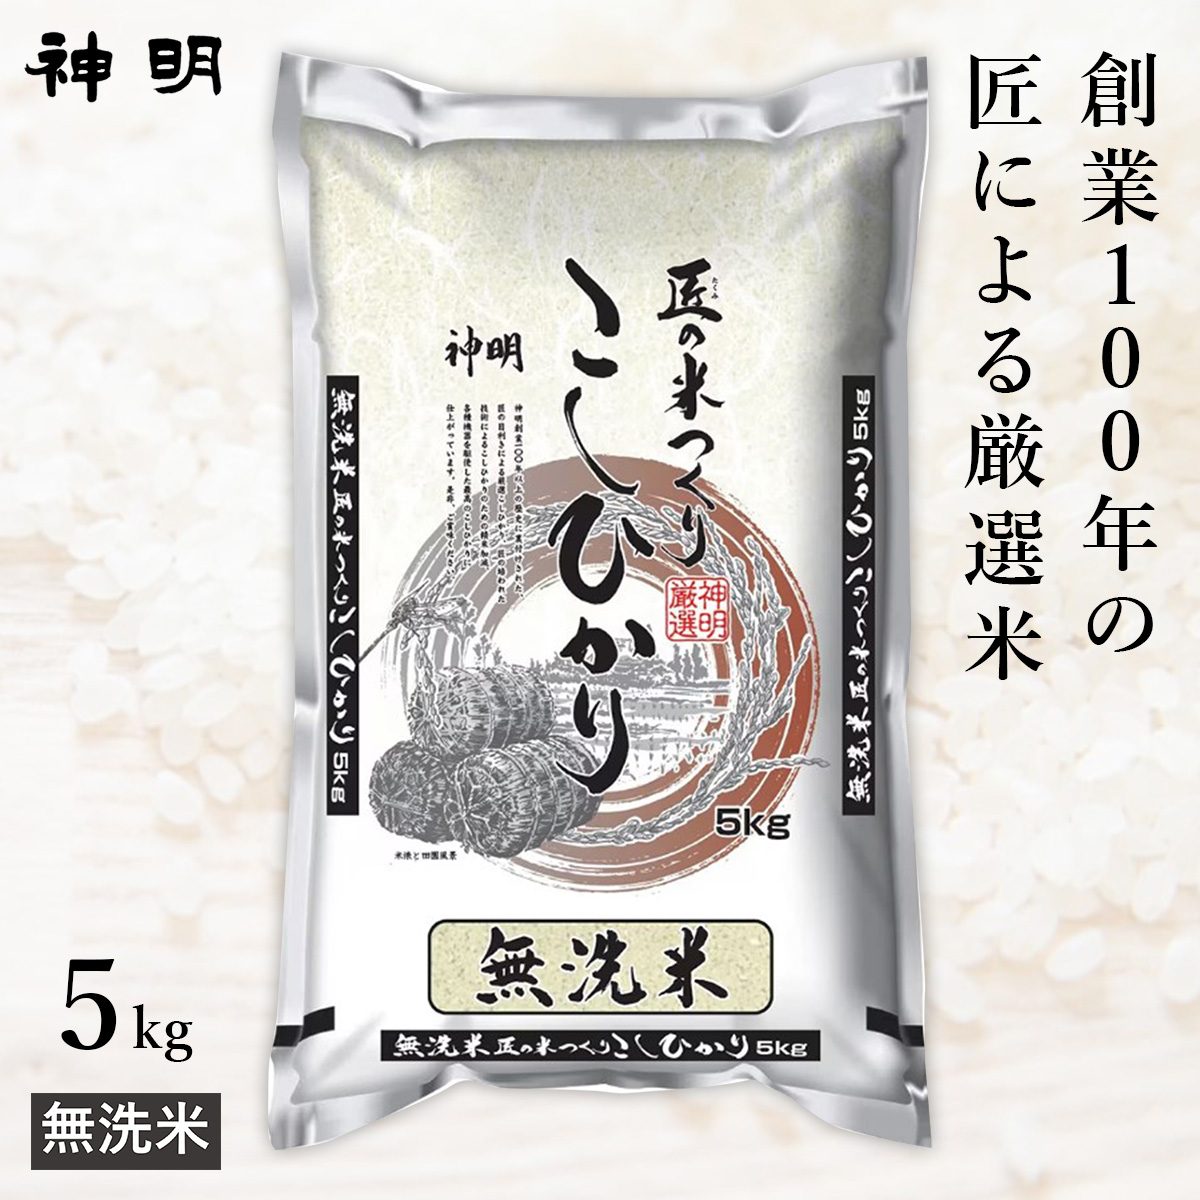 ○【最短当日出荷】無洗米 匠のお米 コシヒカリ 5kg (1袋) 精米仕立て 家計応援米